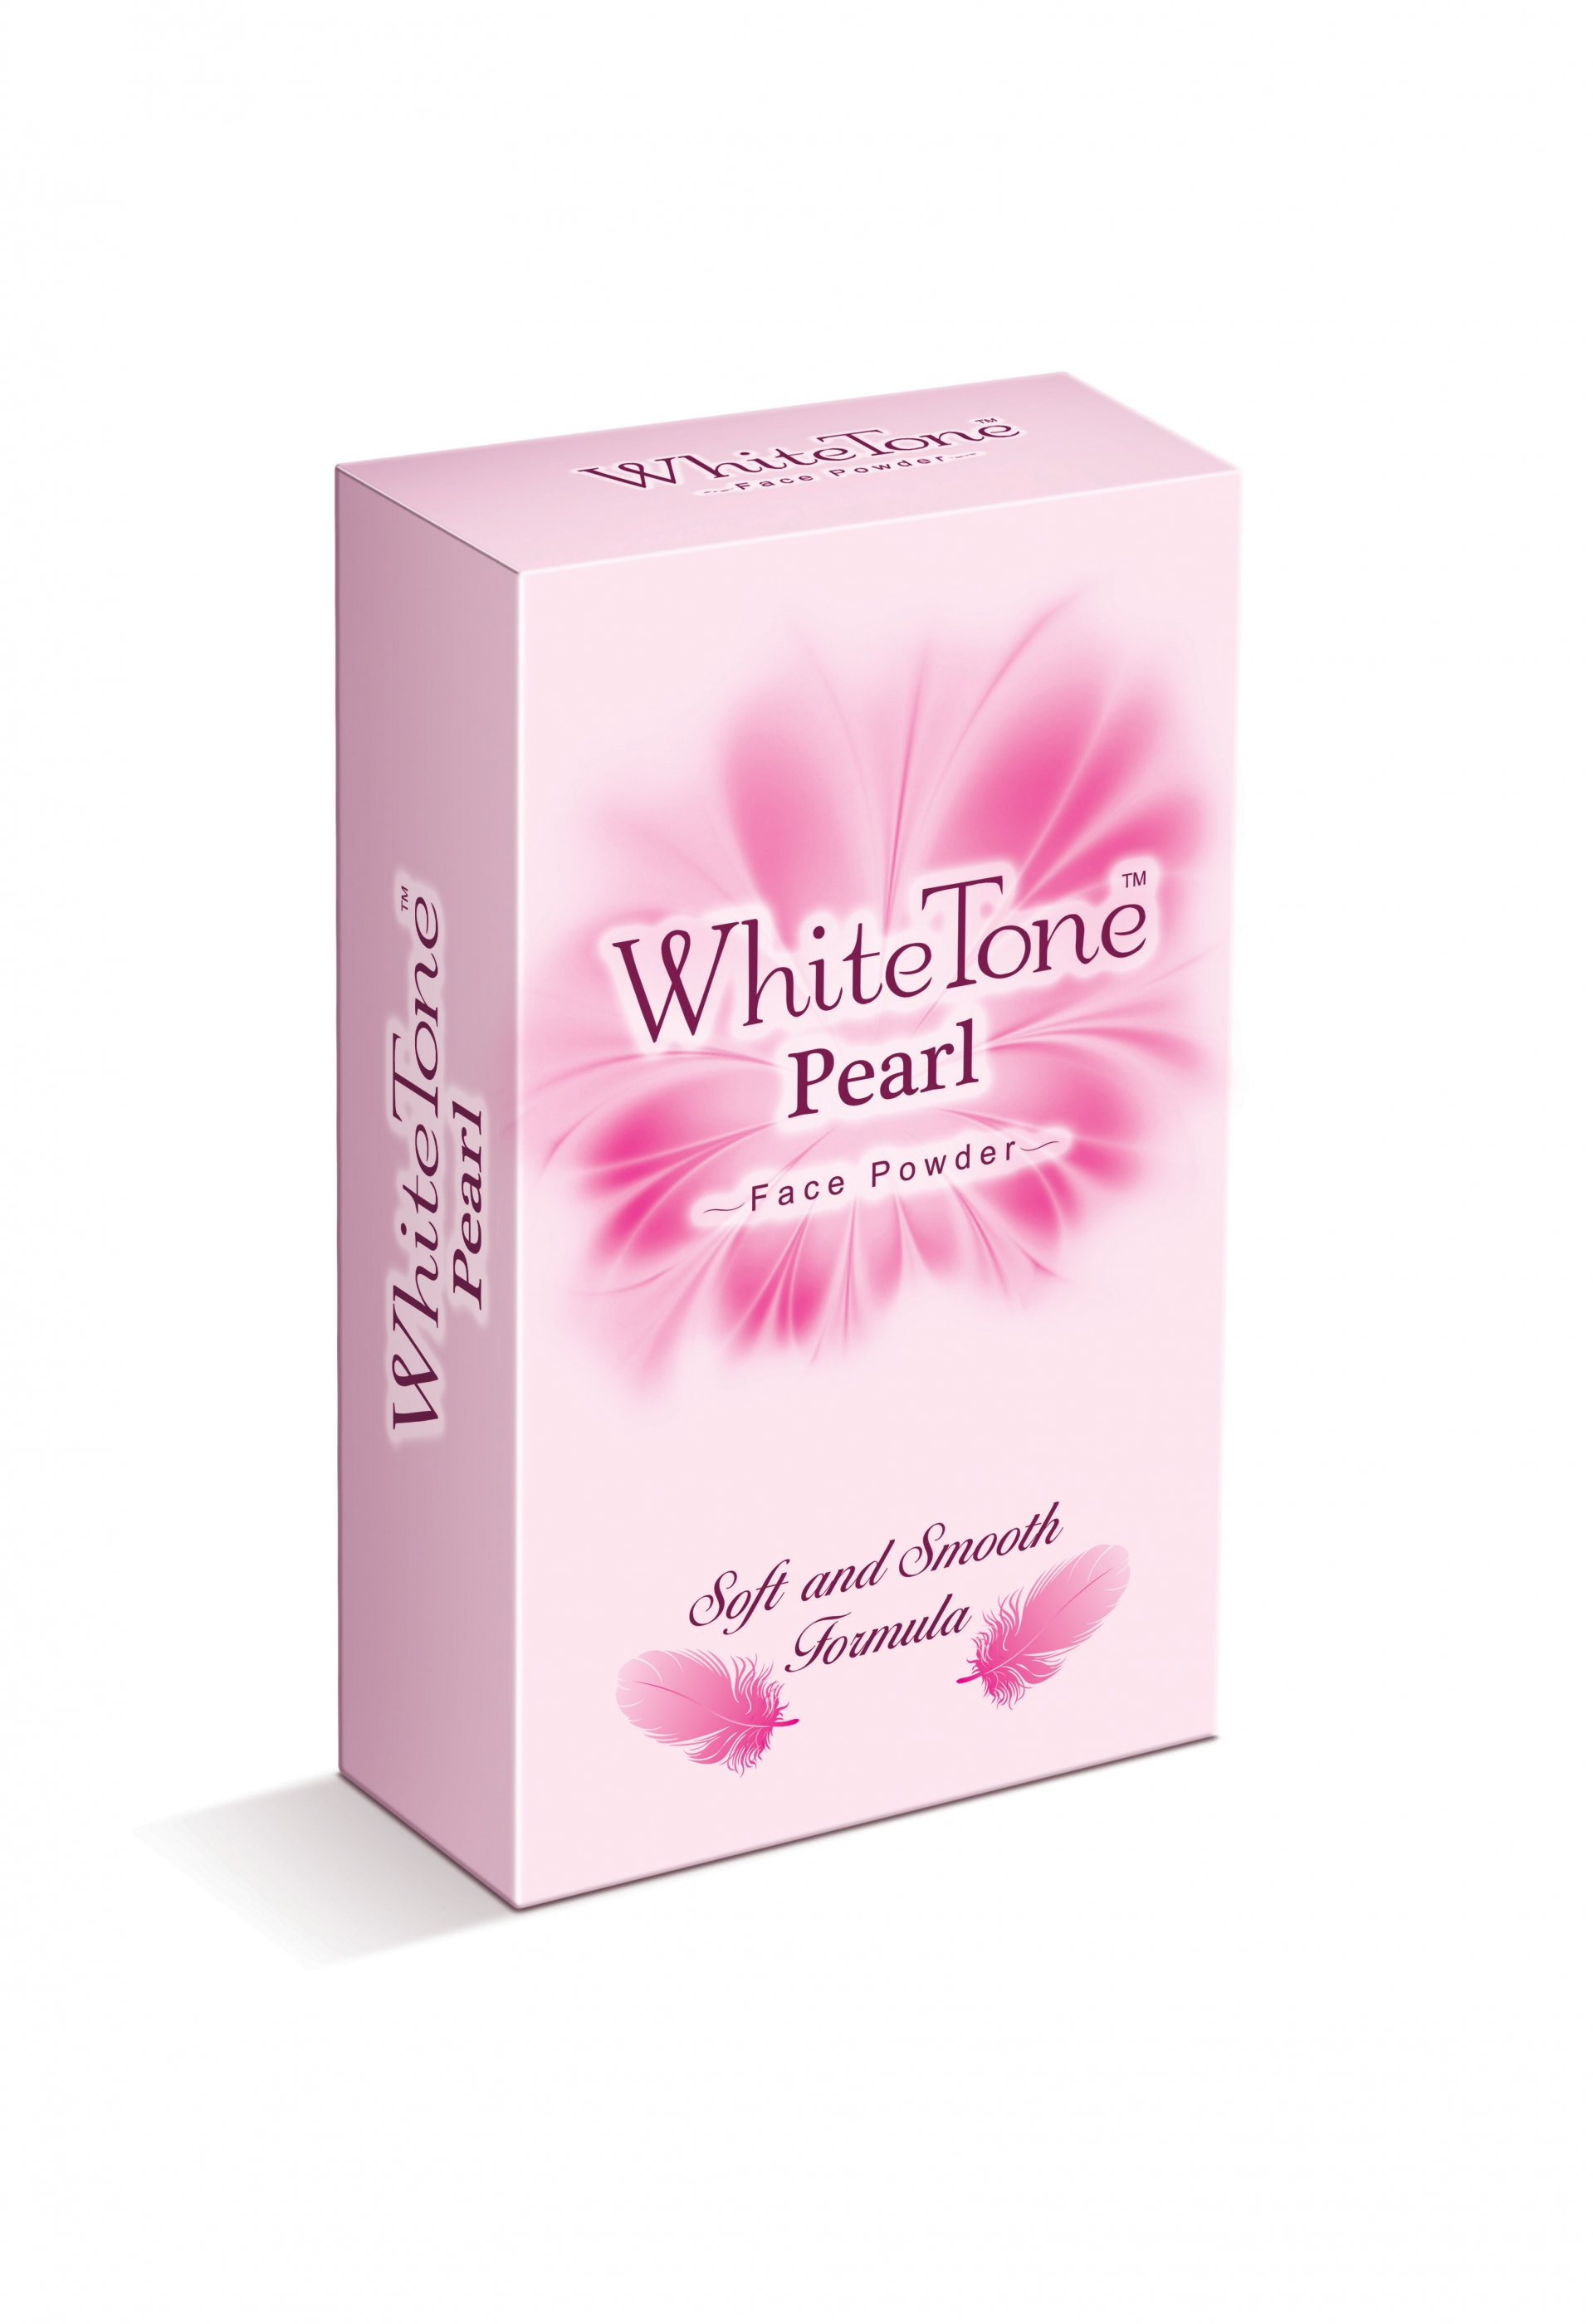 Whitetone Pearl Face Powder : 75 gms